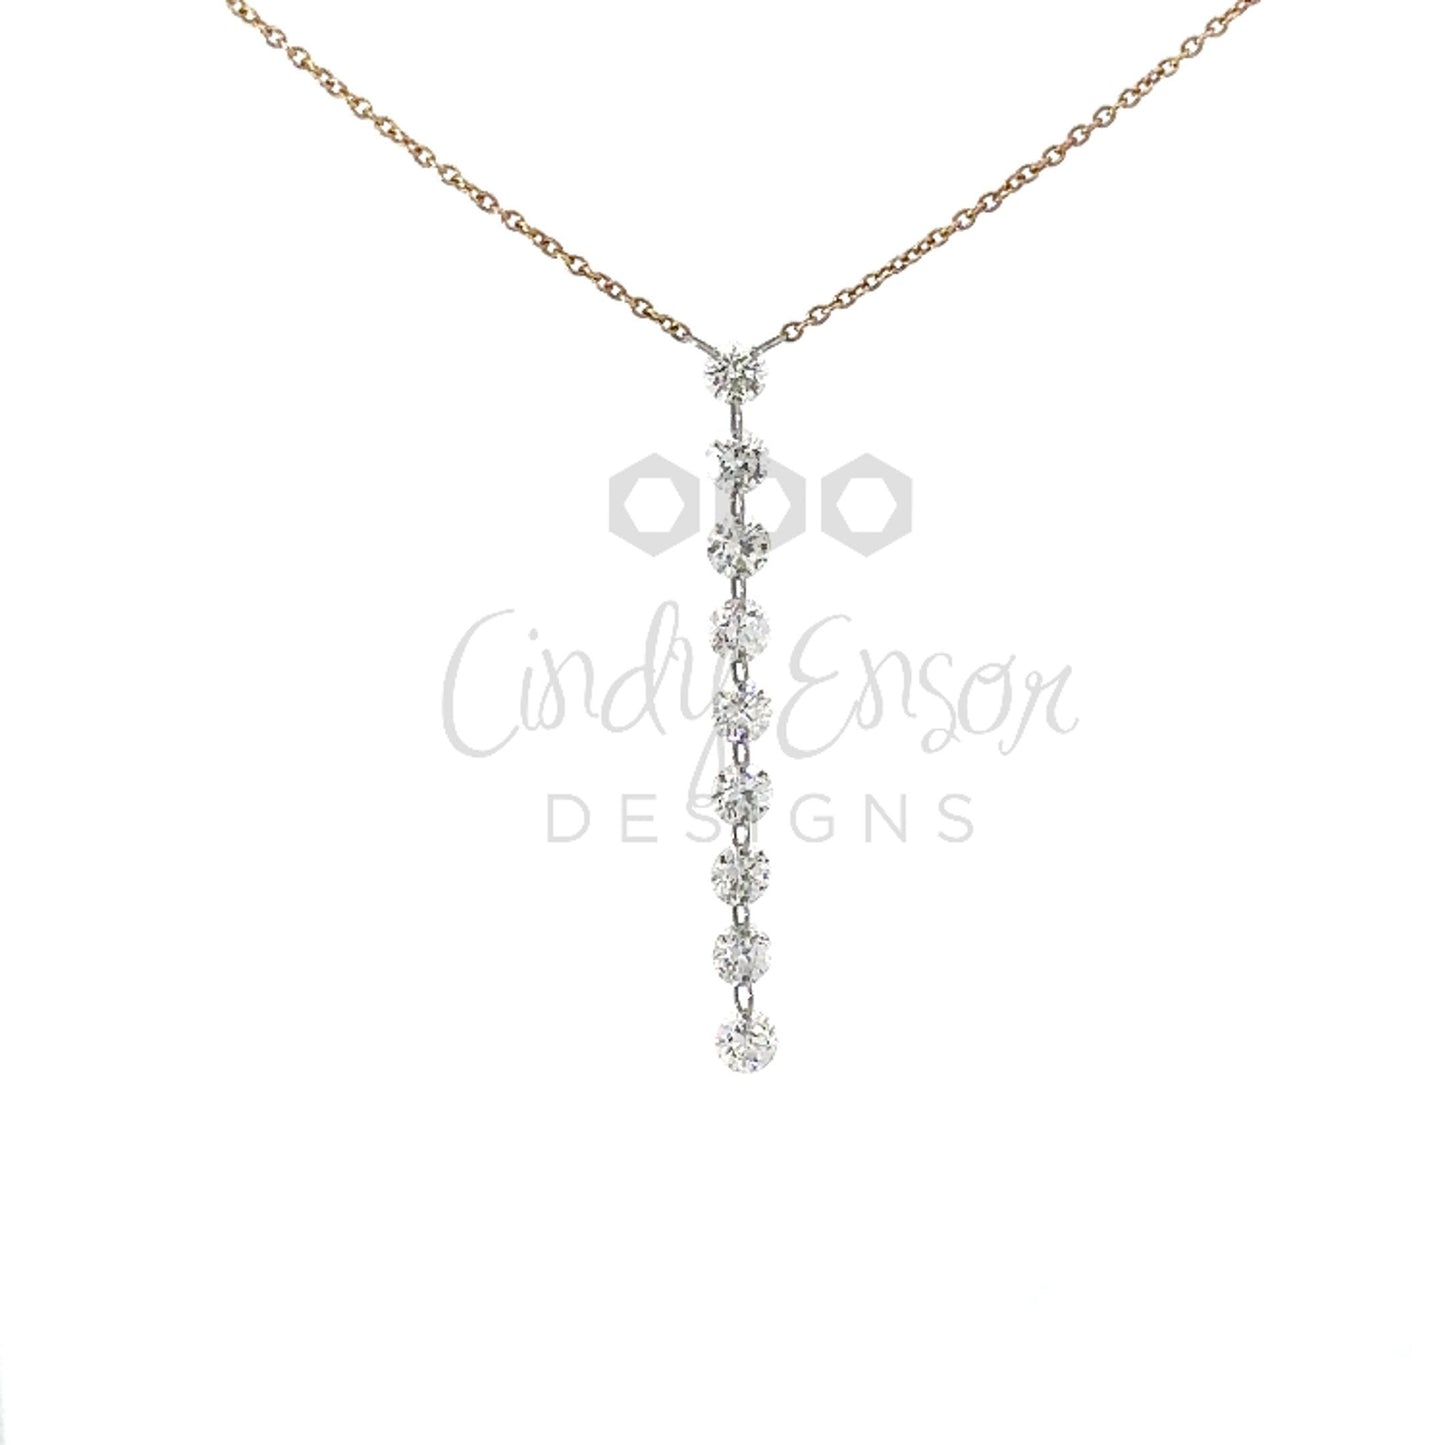 Y-drop 9 Floating Diamond Necklace